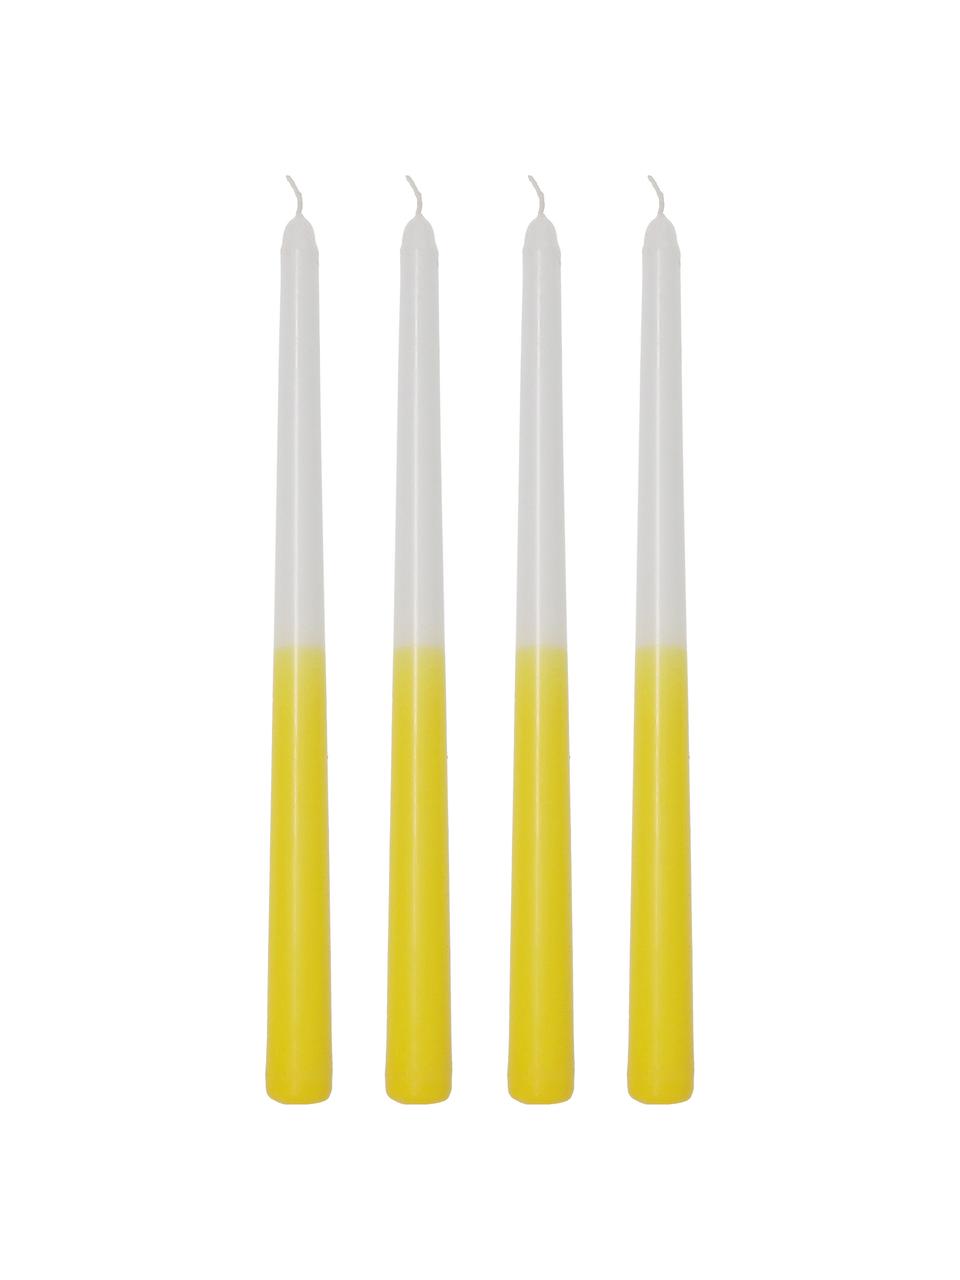 Świeca stołowa Dubli, 4 szt., Wosk, Żółty, biały, Ø 2 x W 31 cm